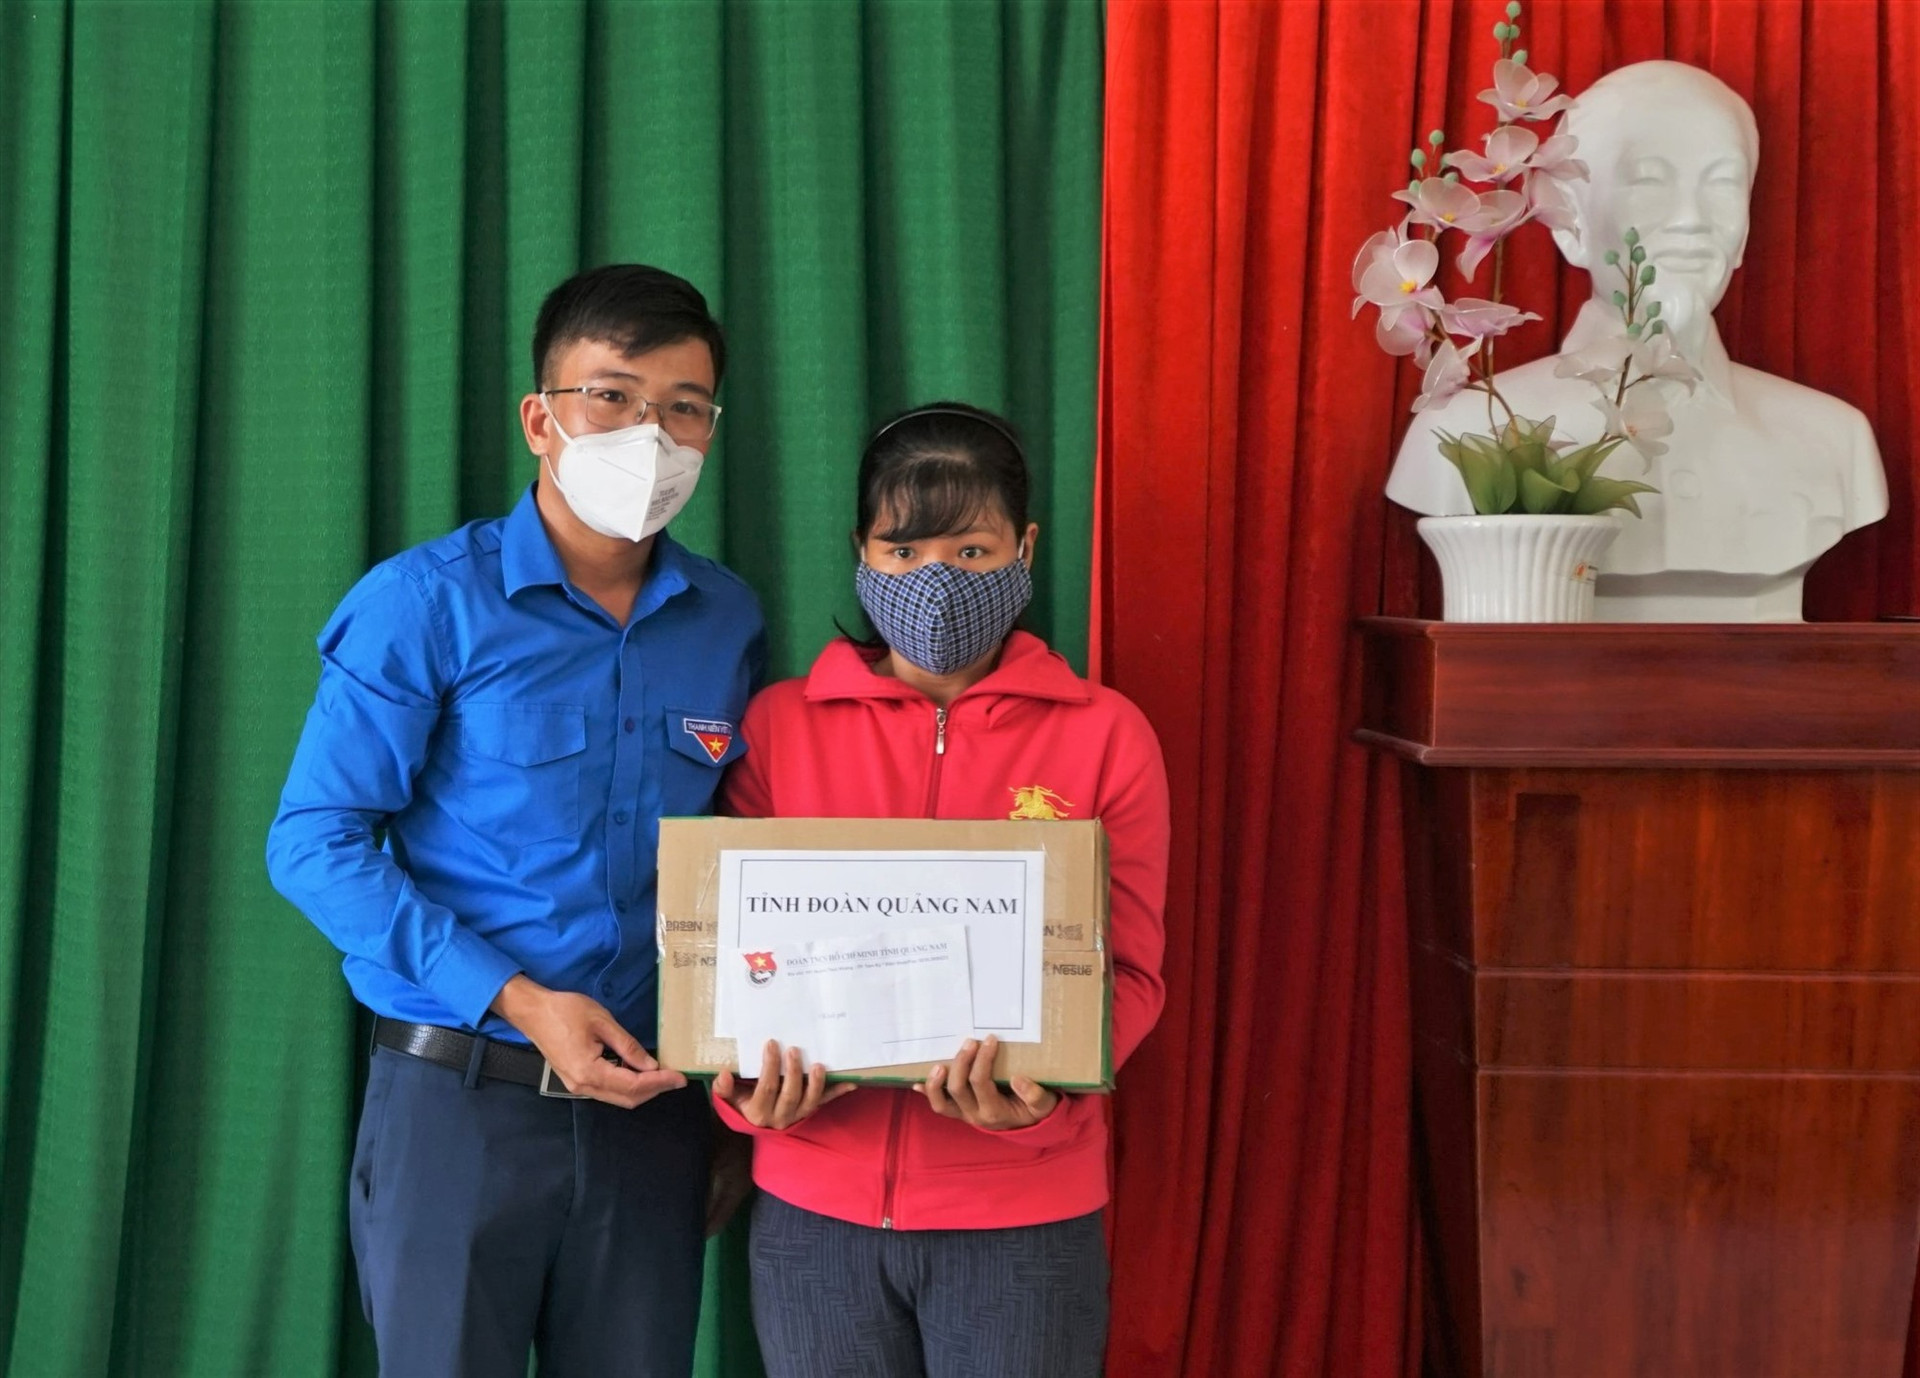 Phó Bí thư Tỉnh đoàn Nguyễn Xuân Đức trao quà động viên cho 1 nạn nhân khó khăn trong cuộc sống. Ảnh: A.N